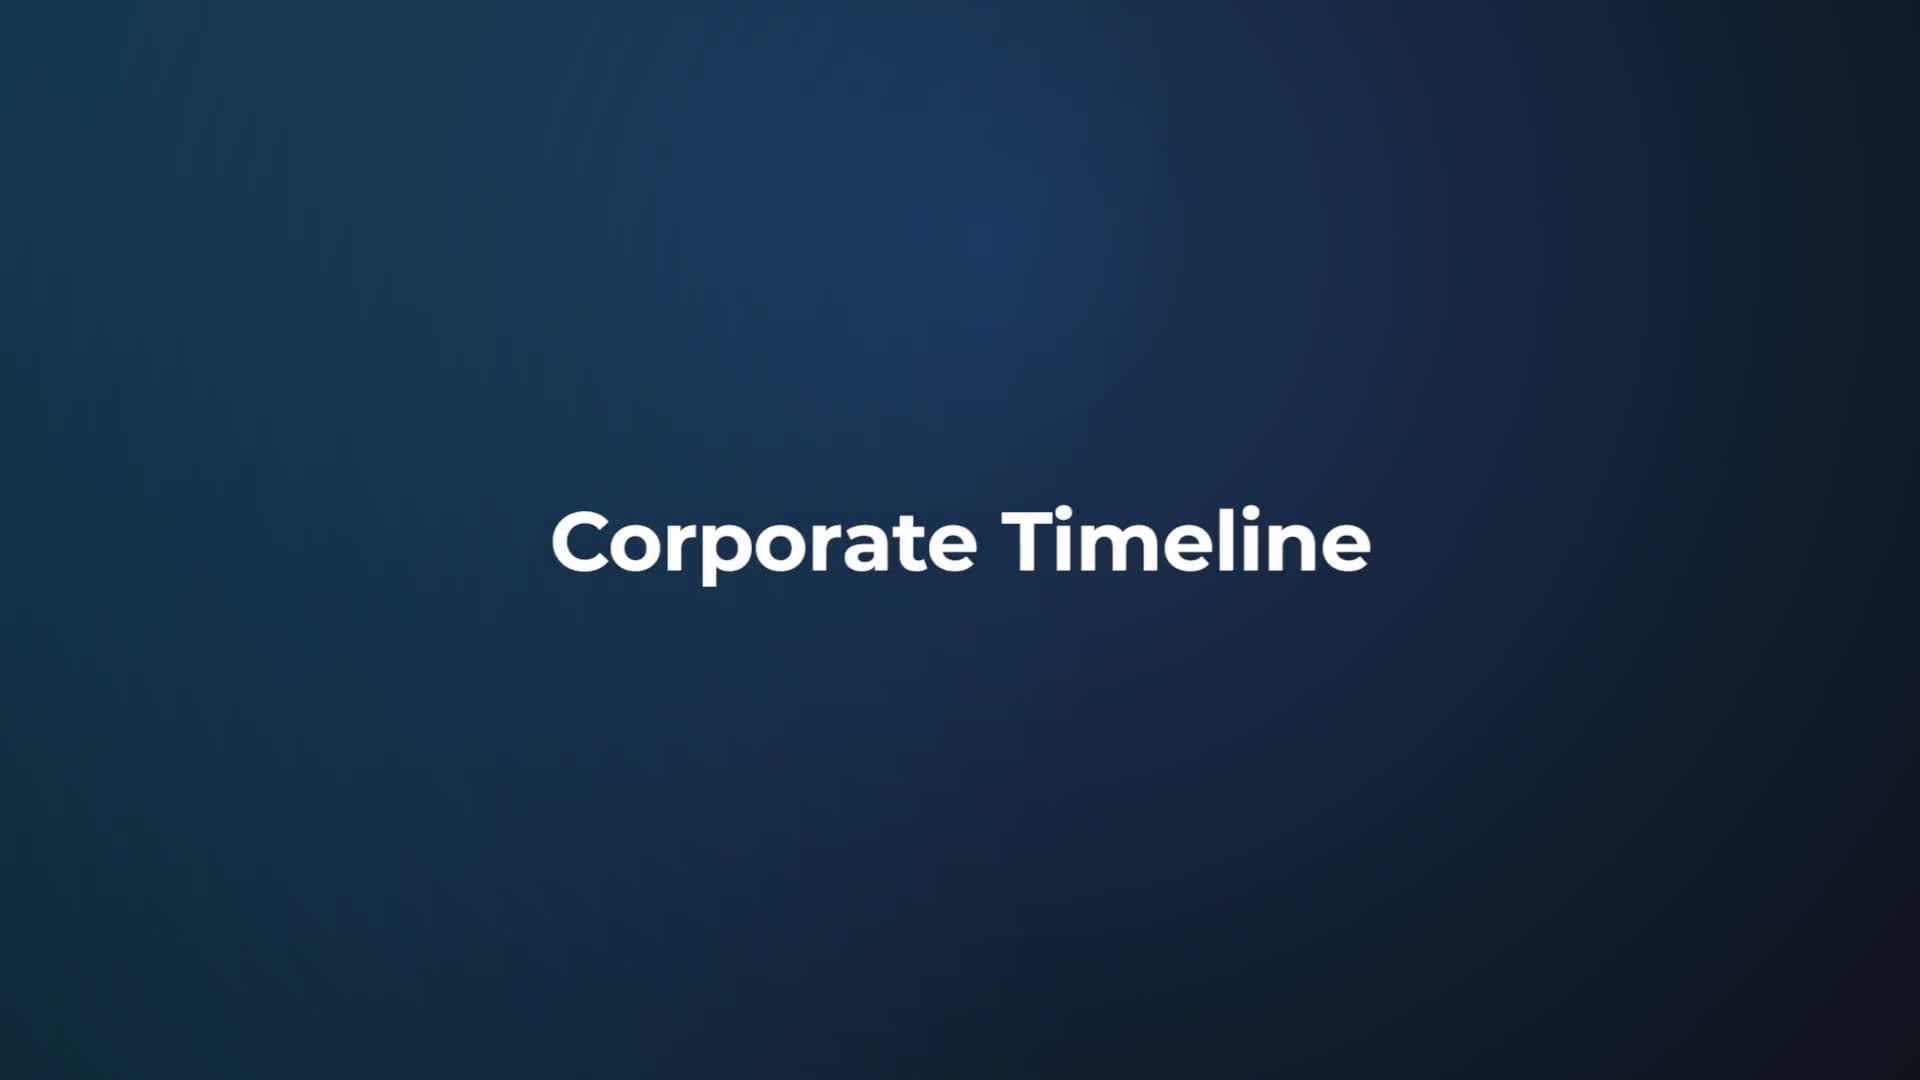 Corporate Timeline Videohive 21868823 Premiere Pro Image 1